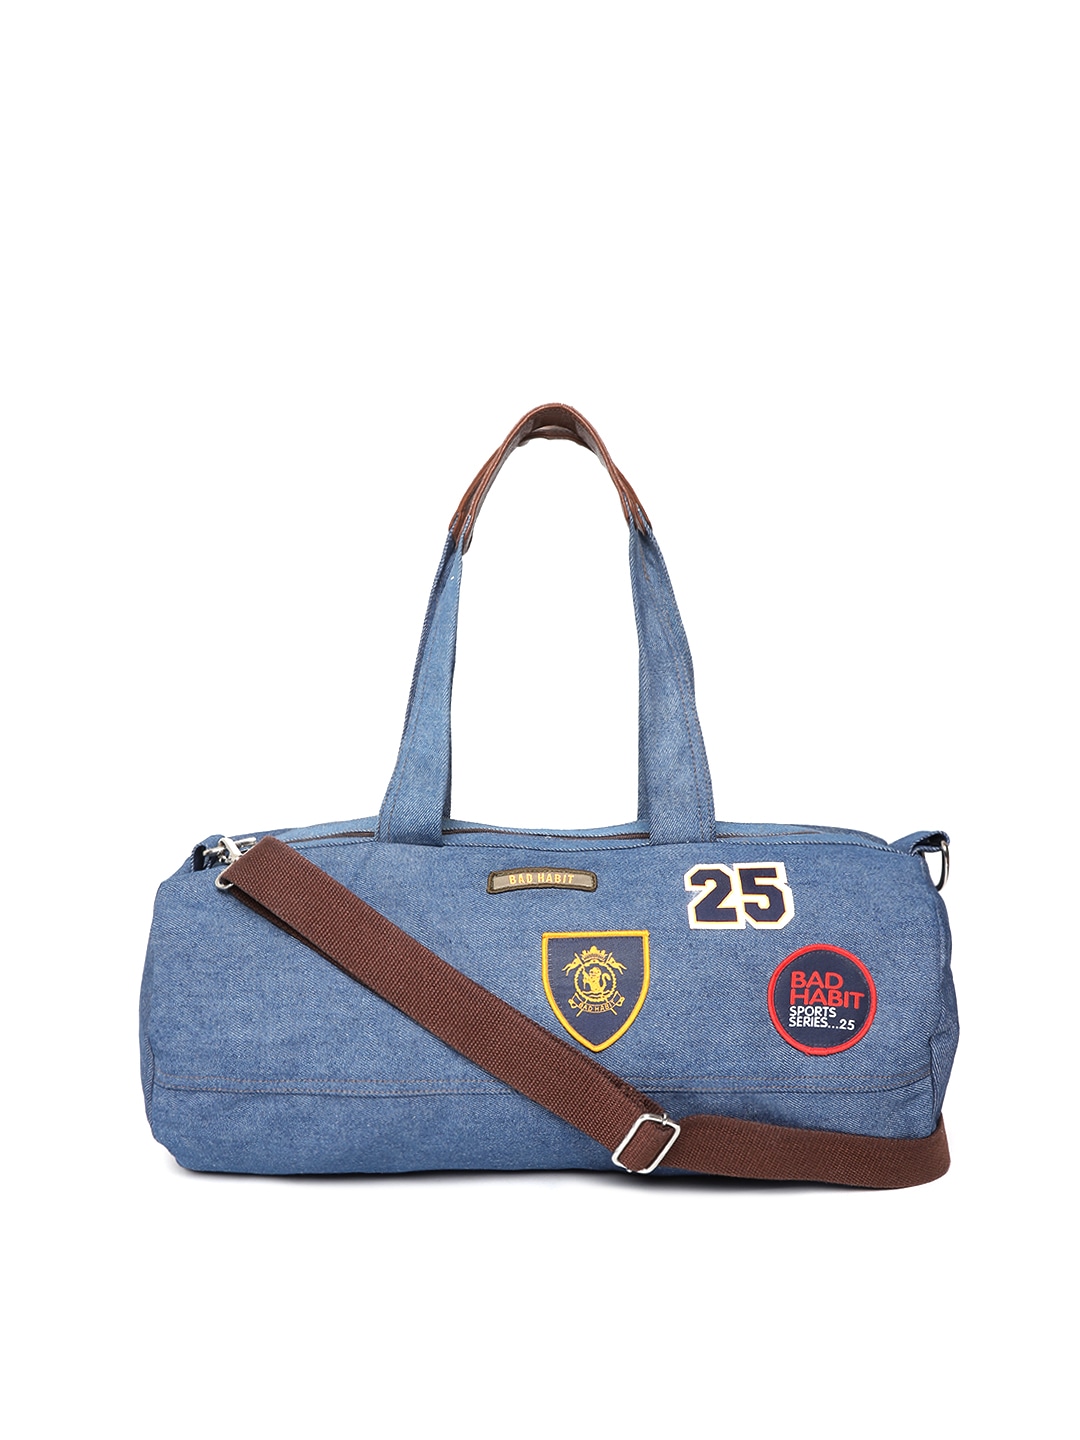 Accessories Duffel Bag | BAD HABIT Unisex Blue Denim Gym Duffel Bag - UI13234